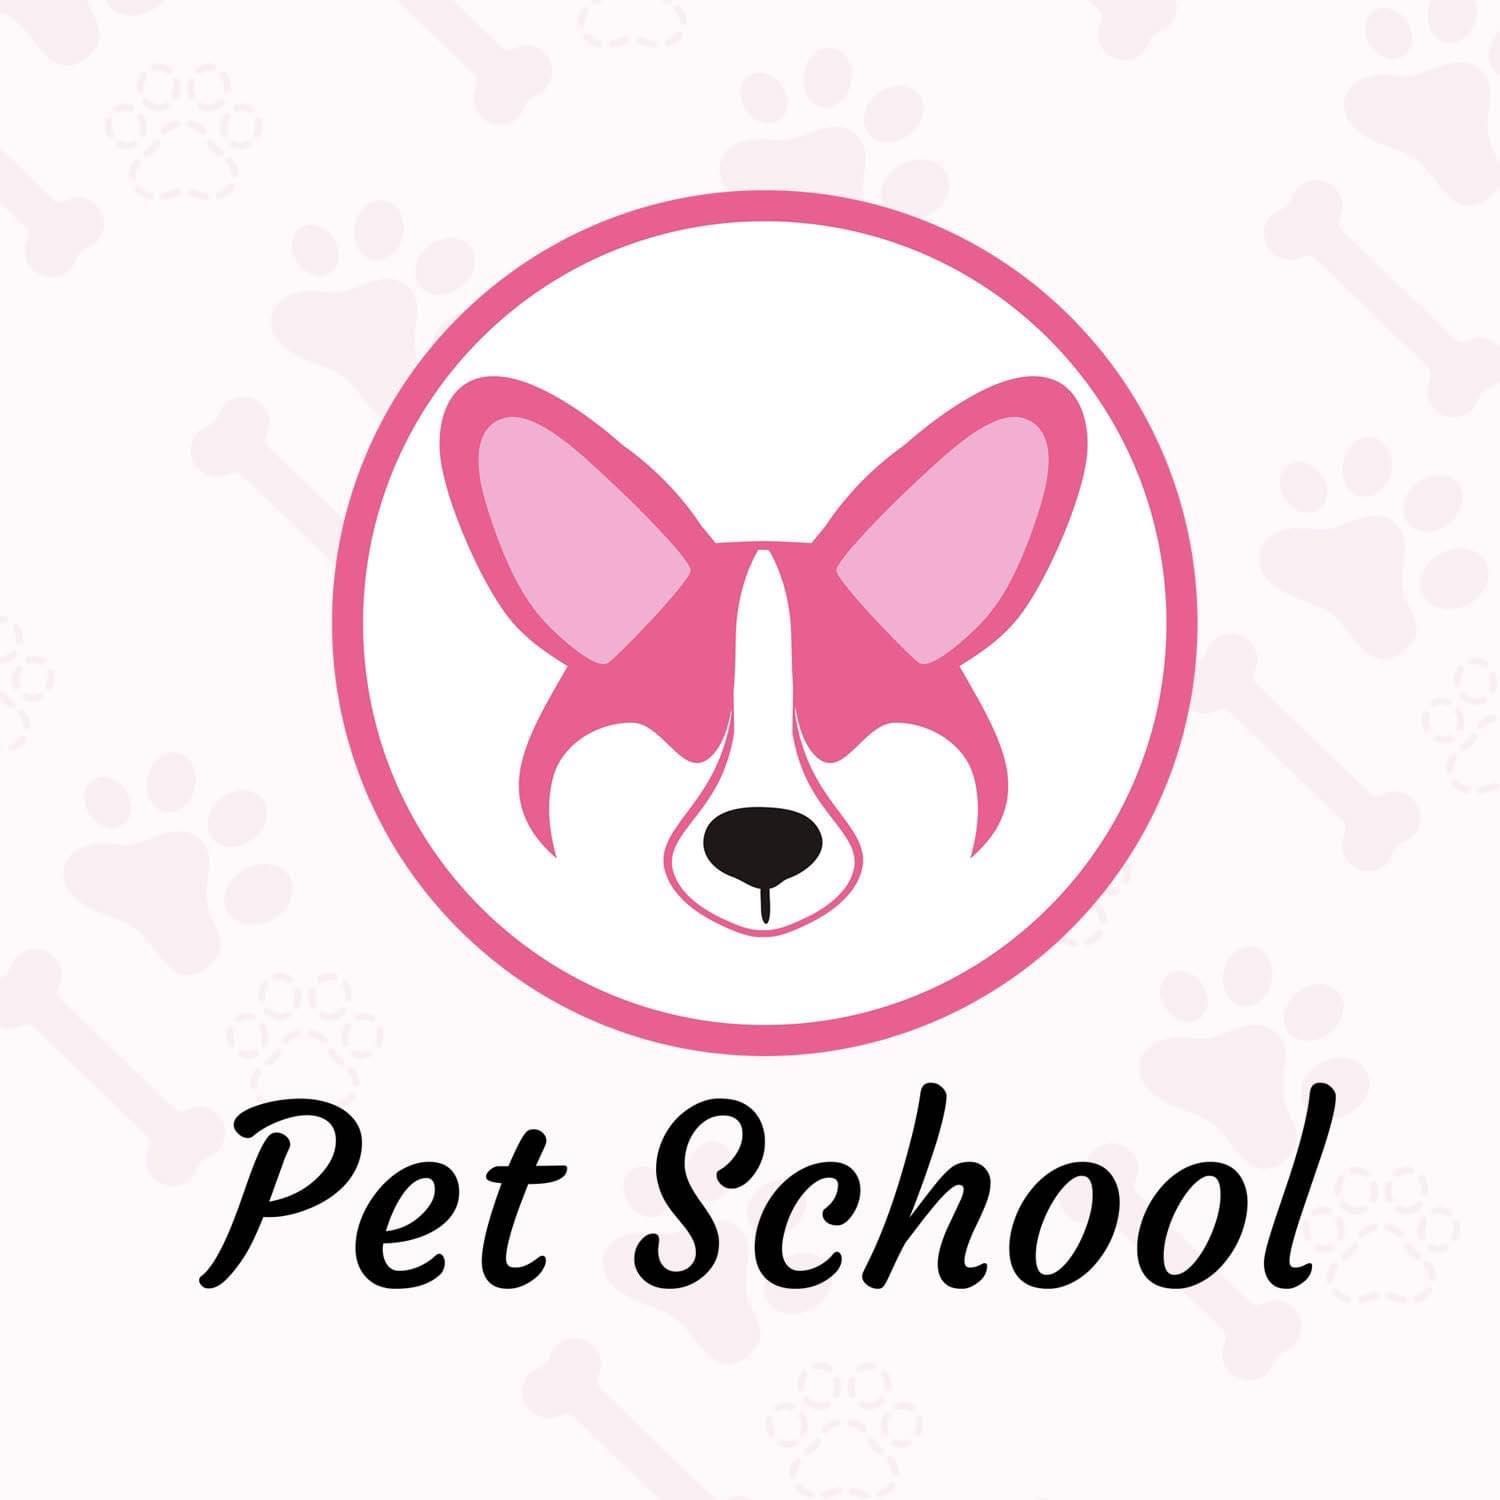 Pet School - Szkolenie psów, terapia zaburzeń zachowania psów i kotów, Mączna, 54-131, Wrocław, Fabryczna